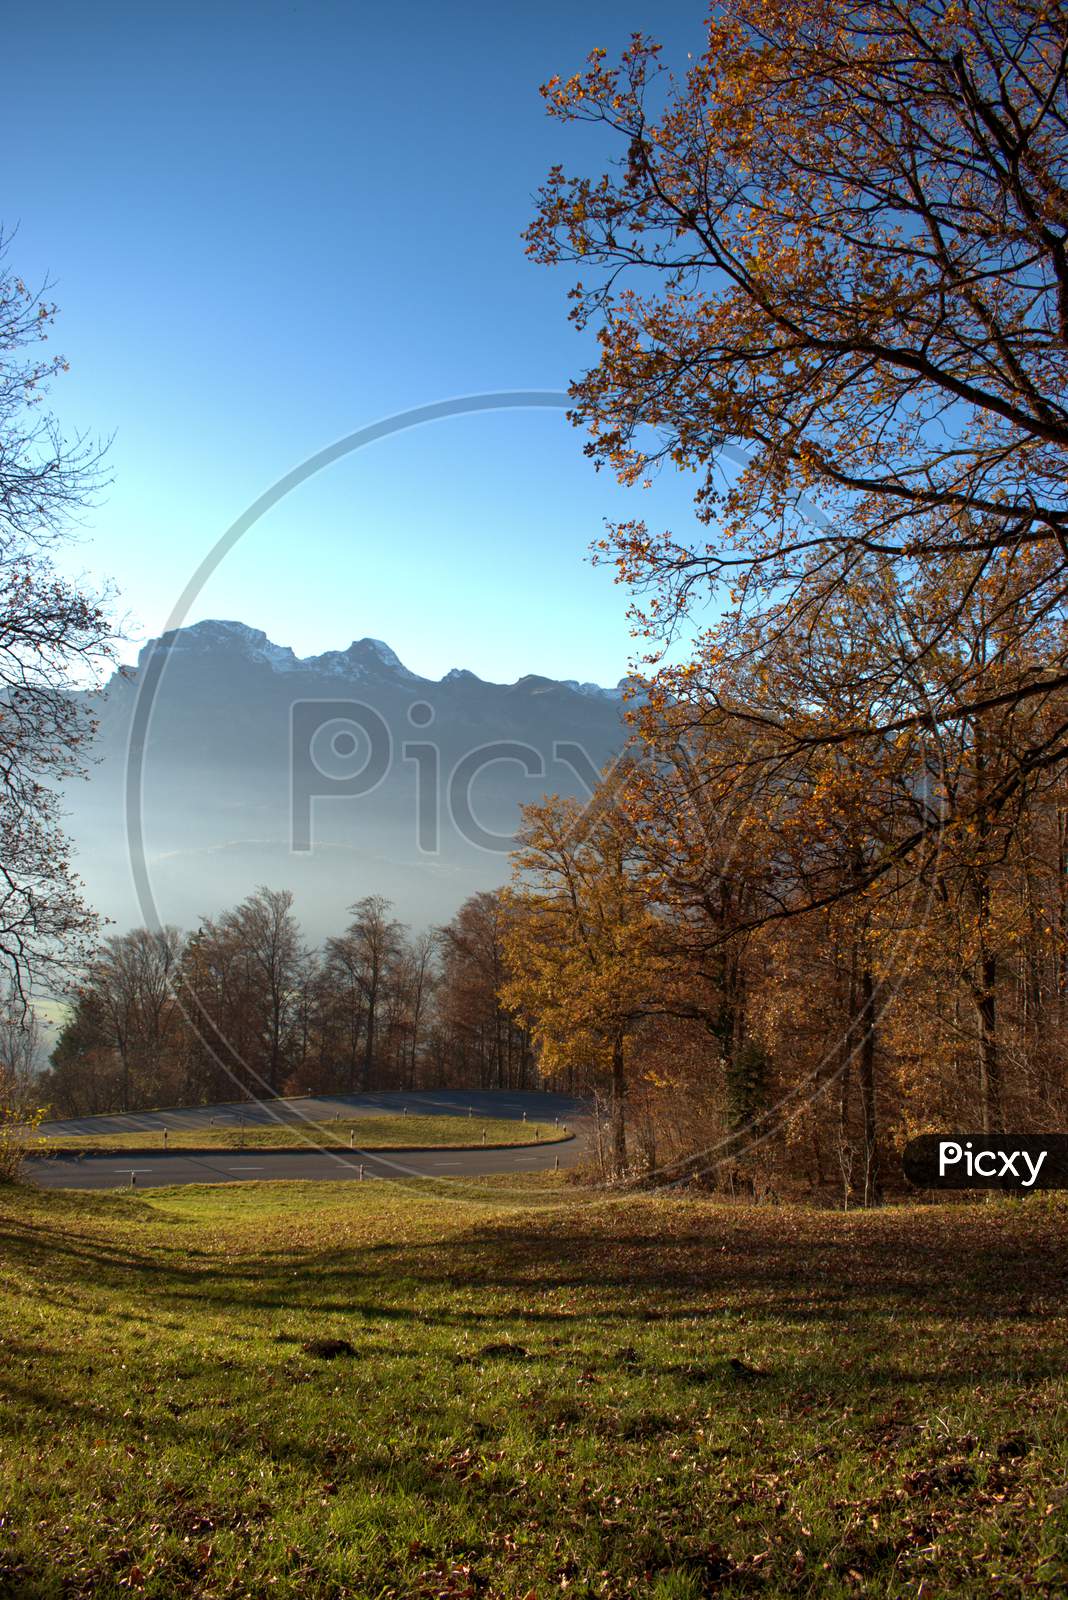 Colorful autumn scenery in Triesenberg in Liechtenstein 18.11.2020